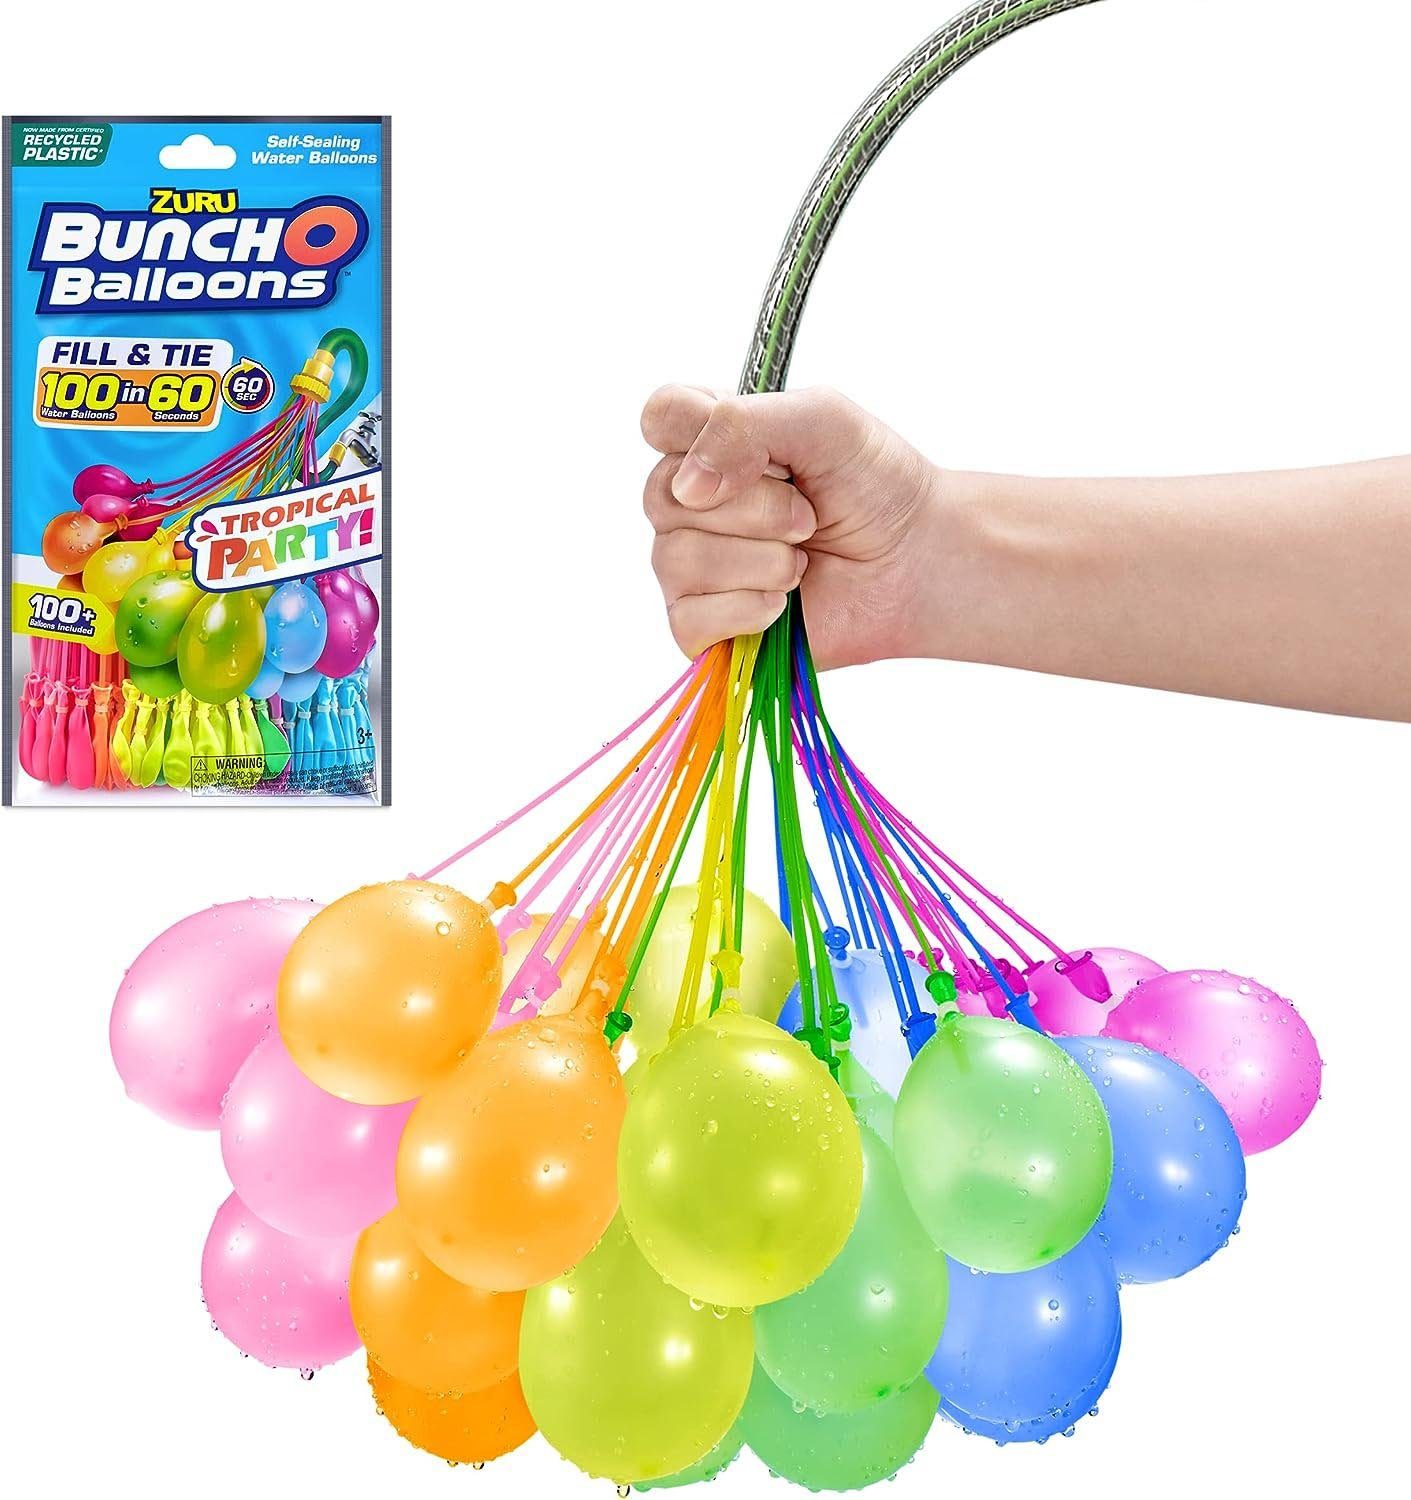 ZURU Wasserbombe ZURU 56480UQ1 - Bunch O Balloons -Wasserballons